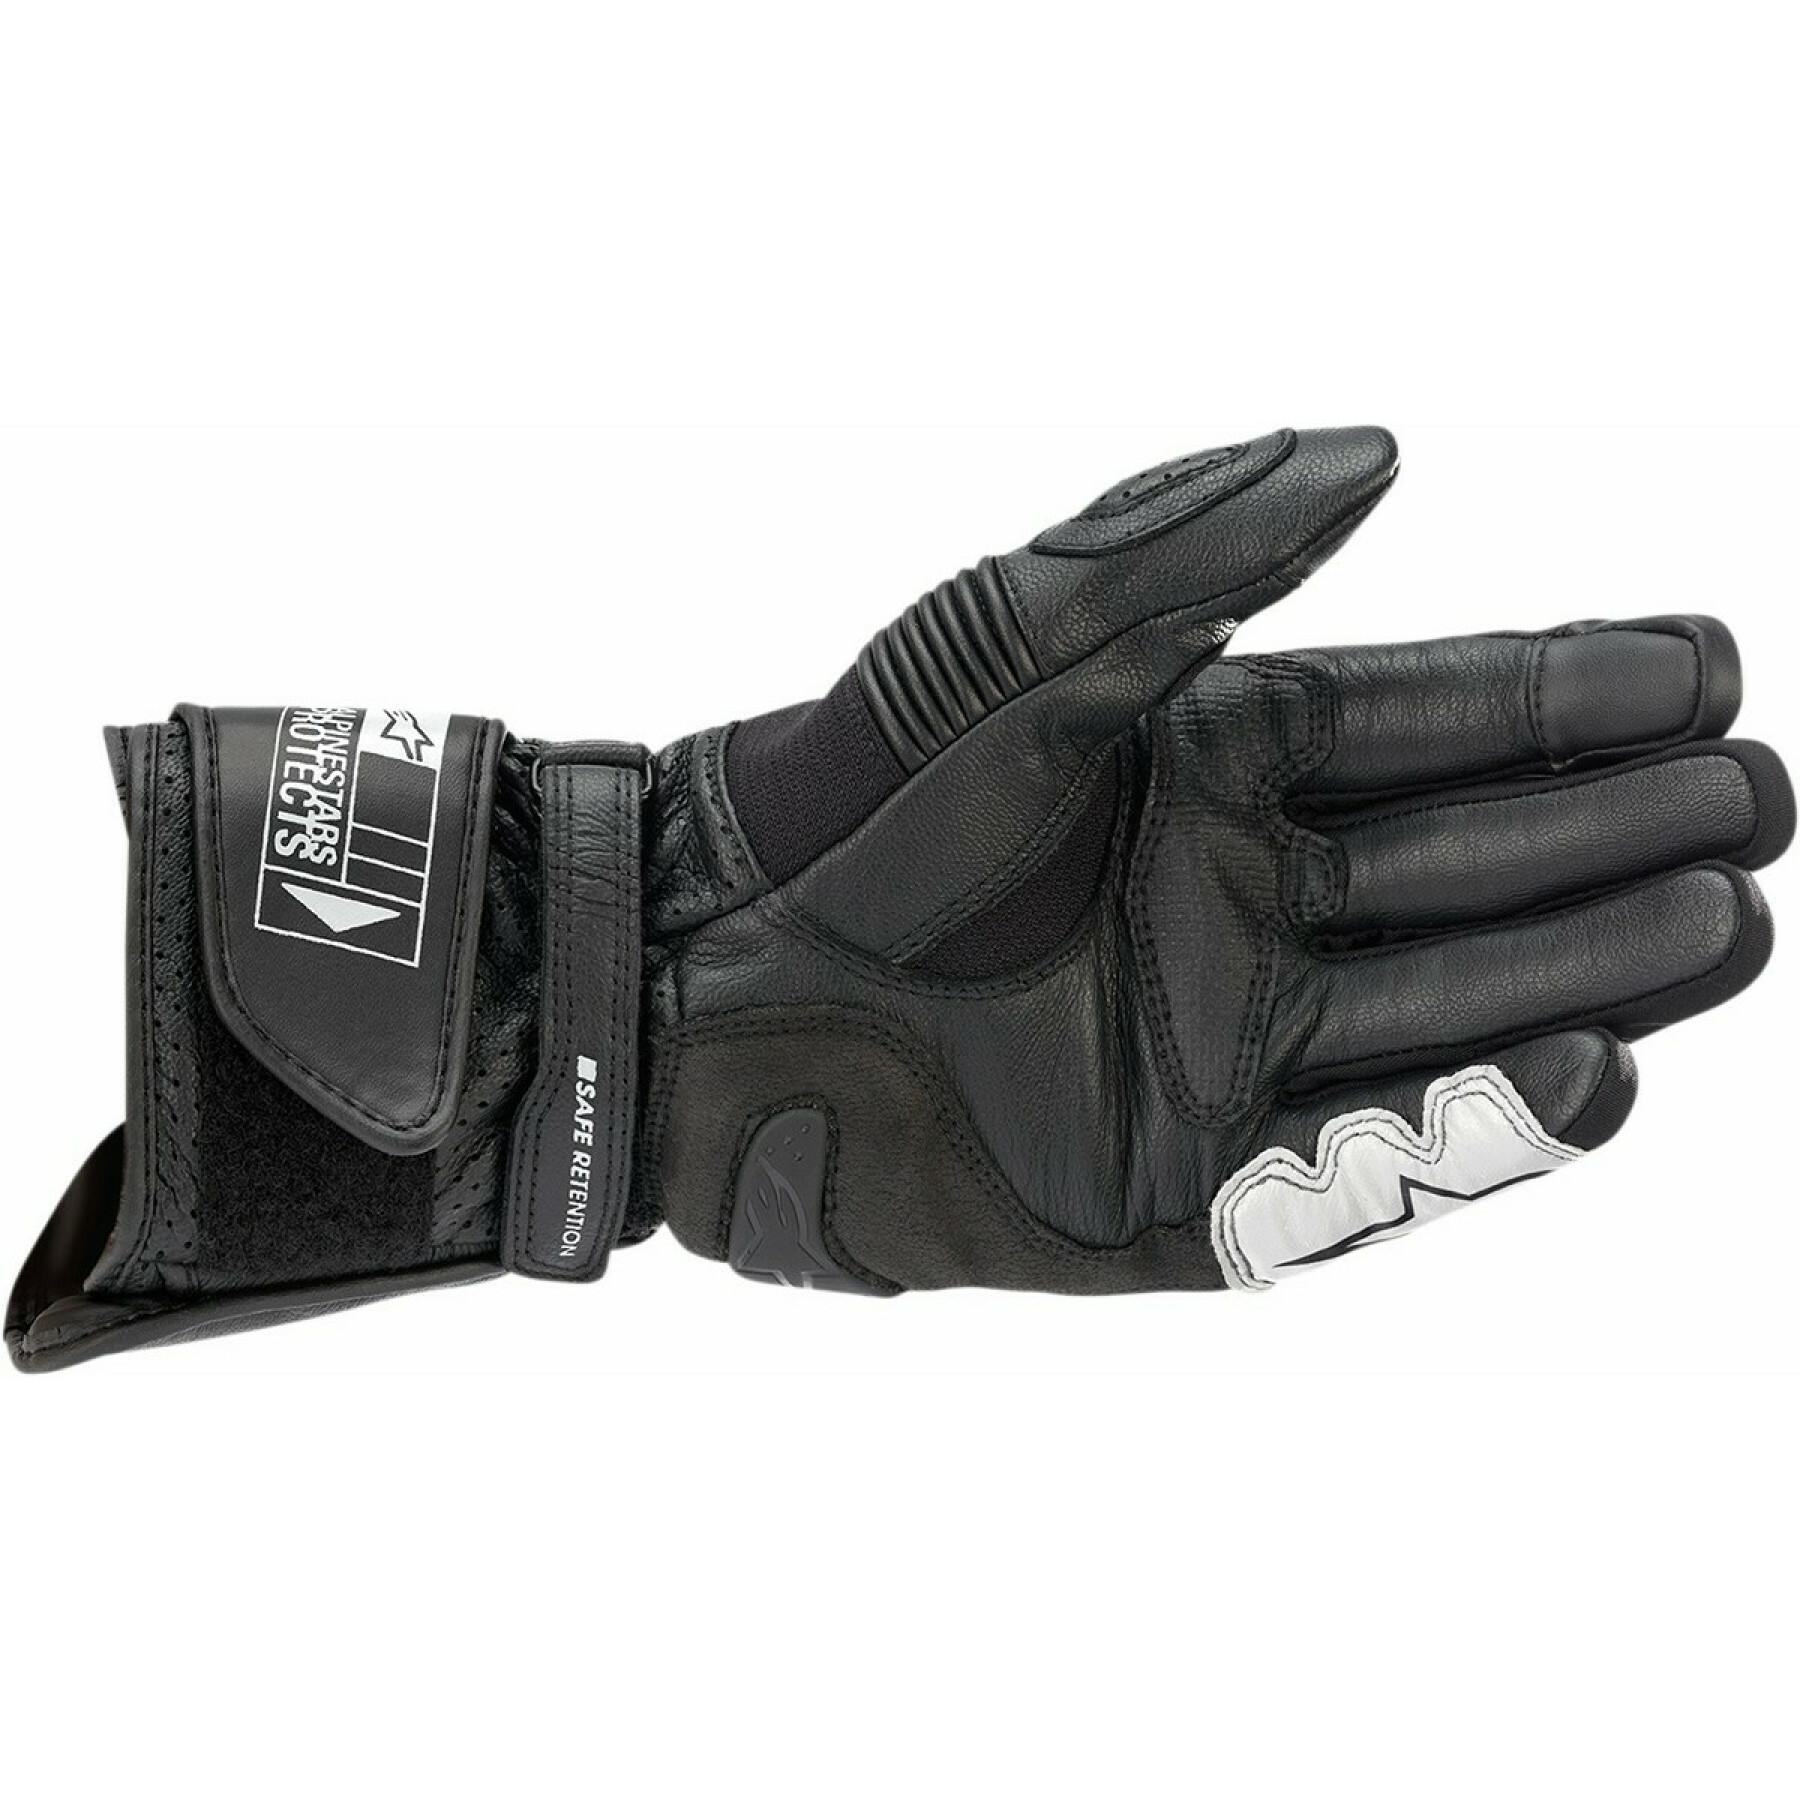 Motorcycle gloves Alpinestars SP-2 V3